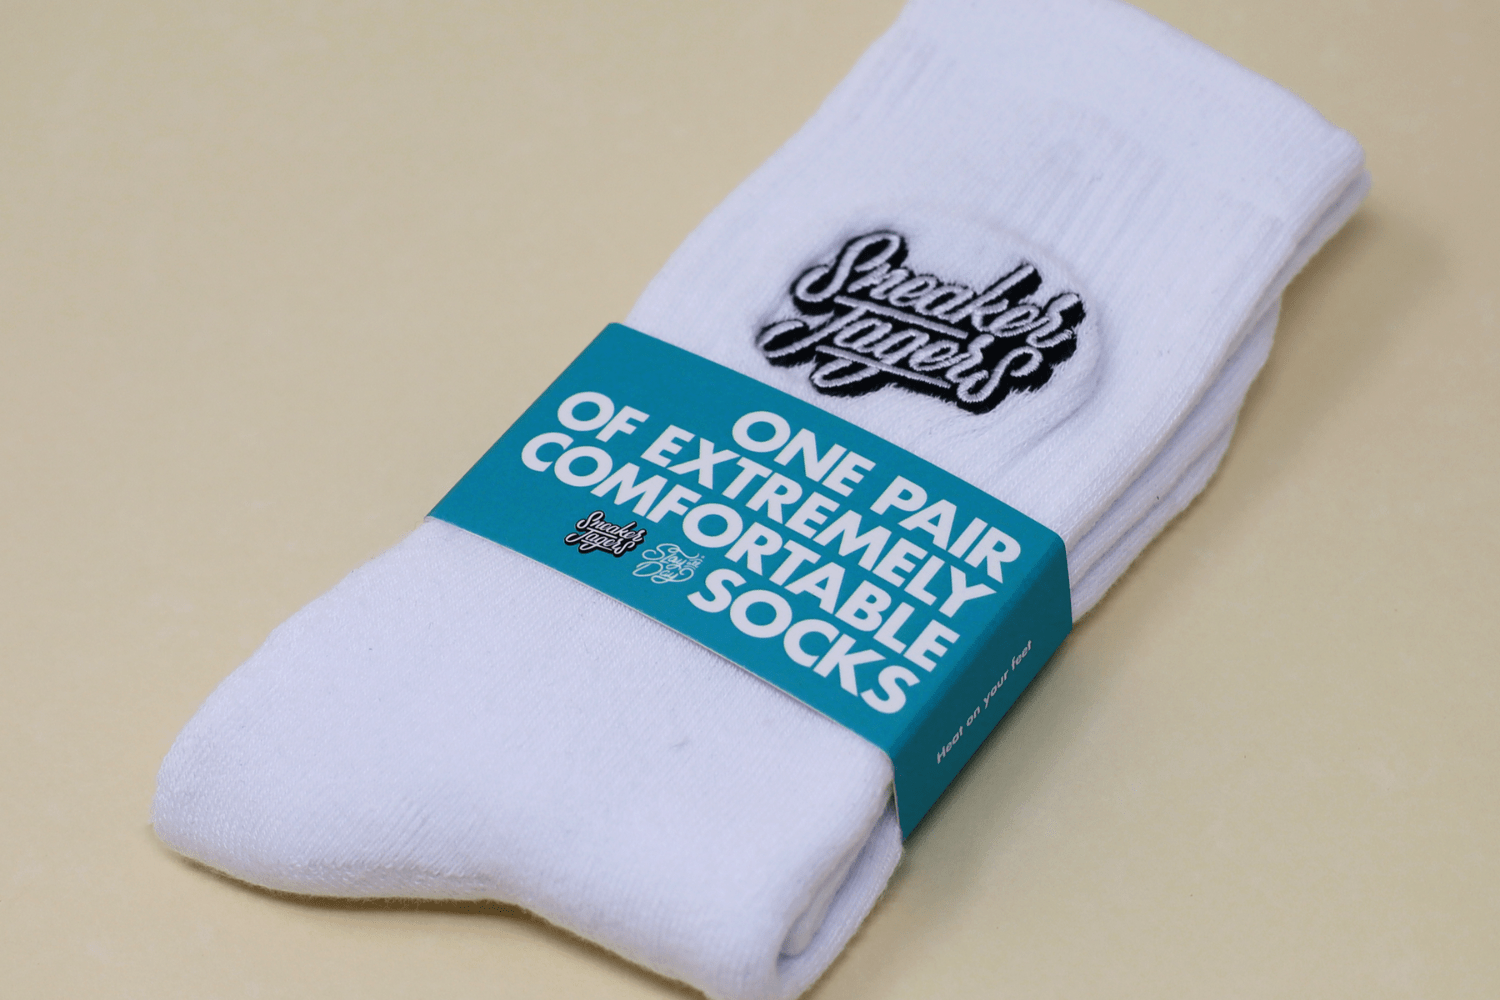 Sneakerjagers presents their own exclusive socks